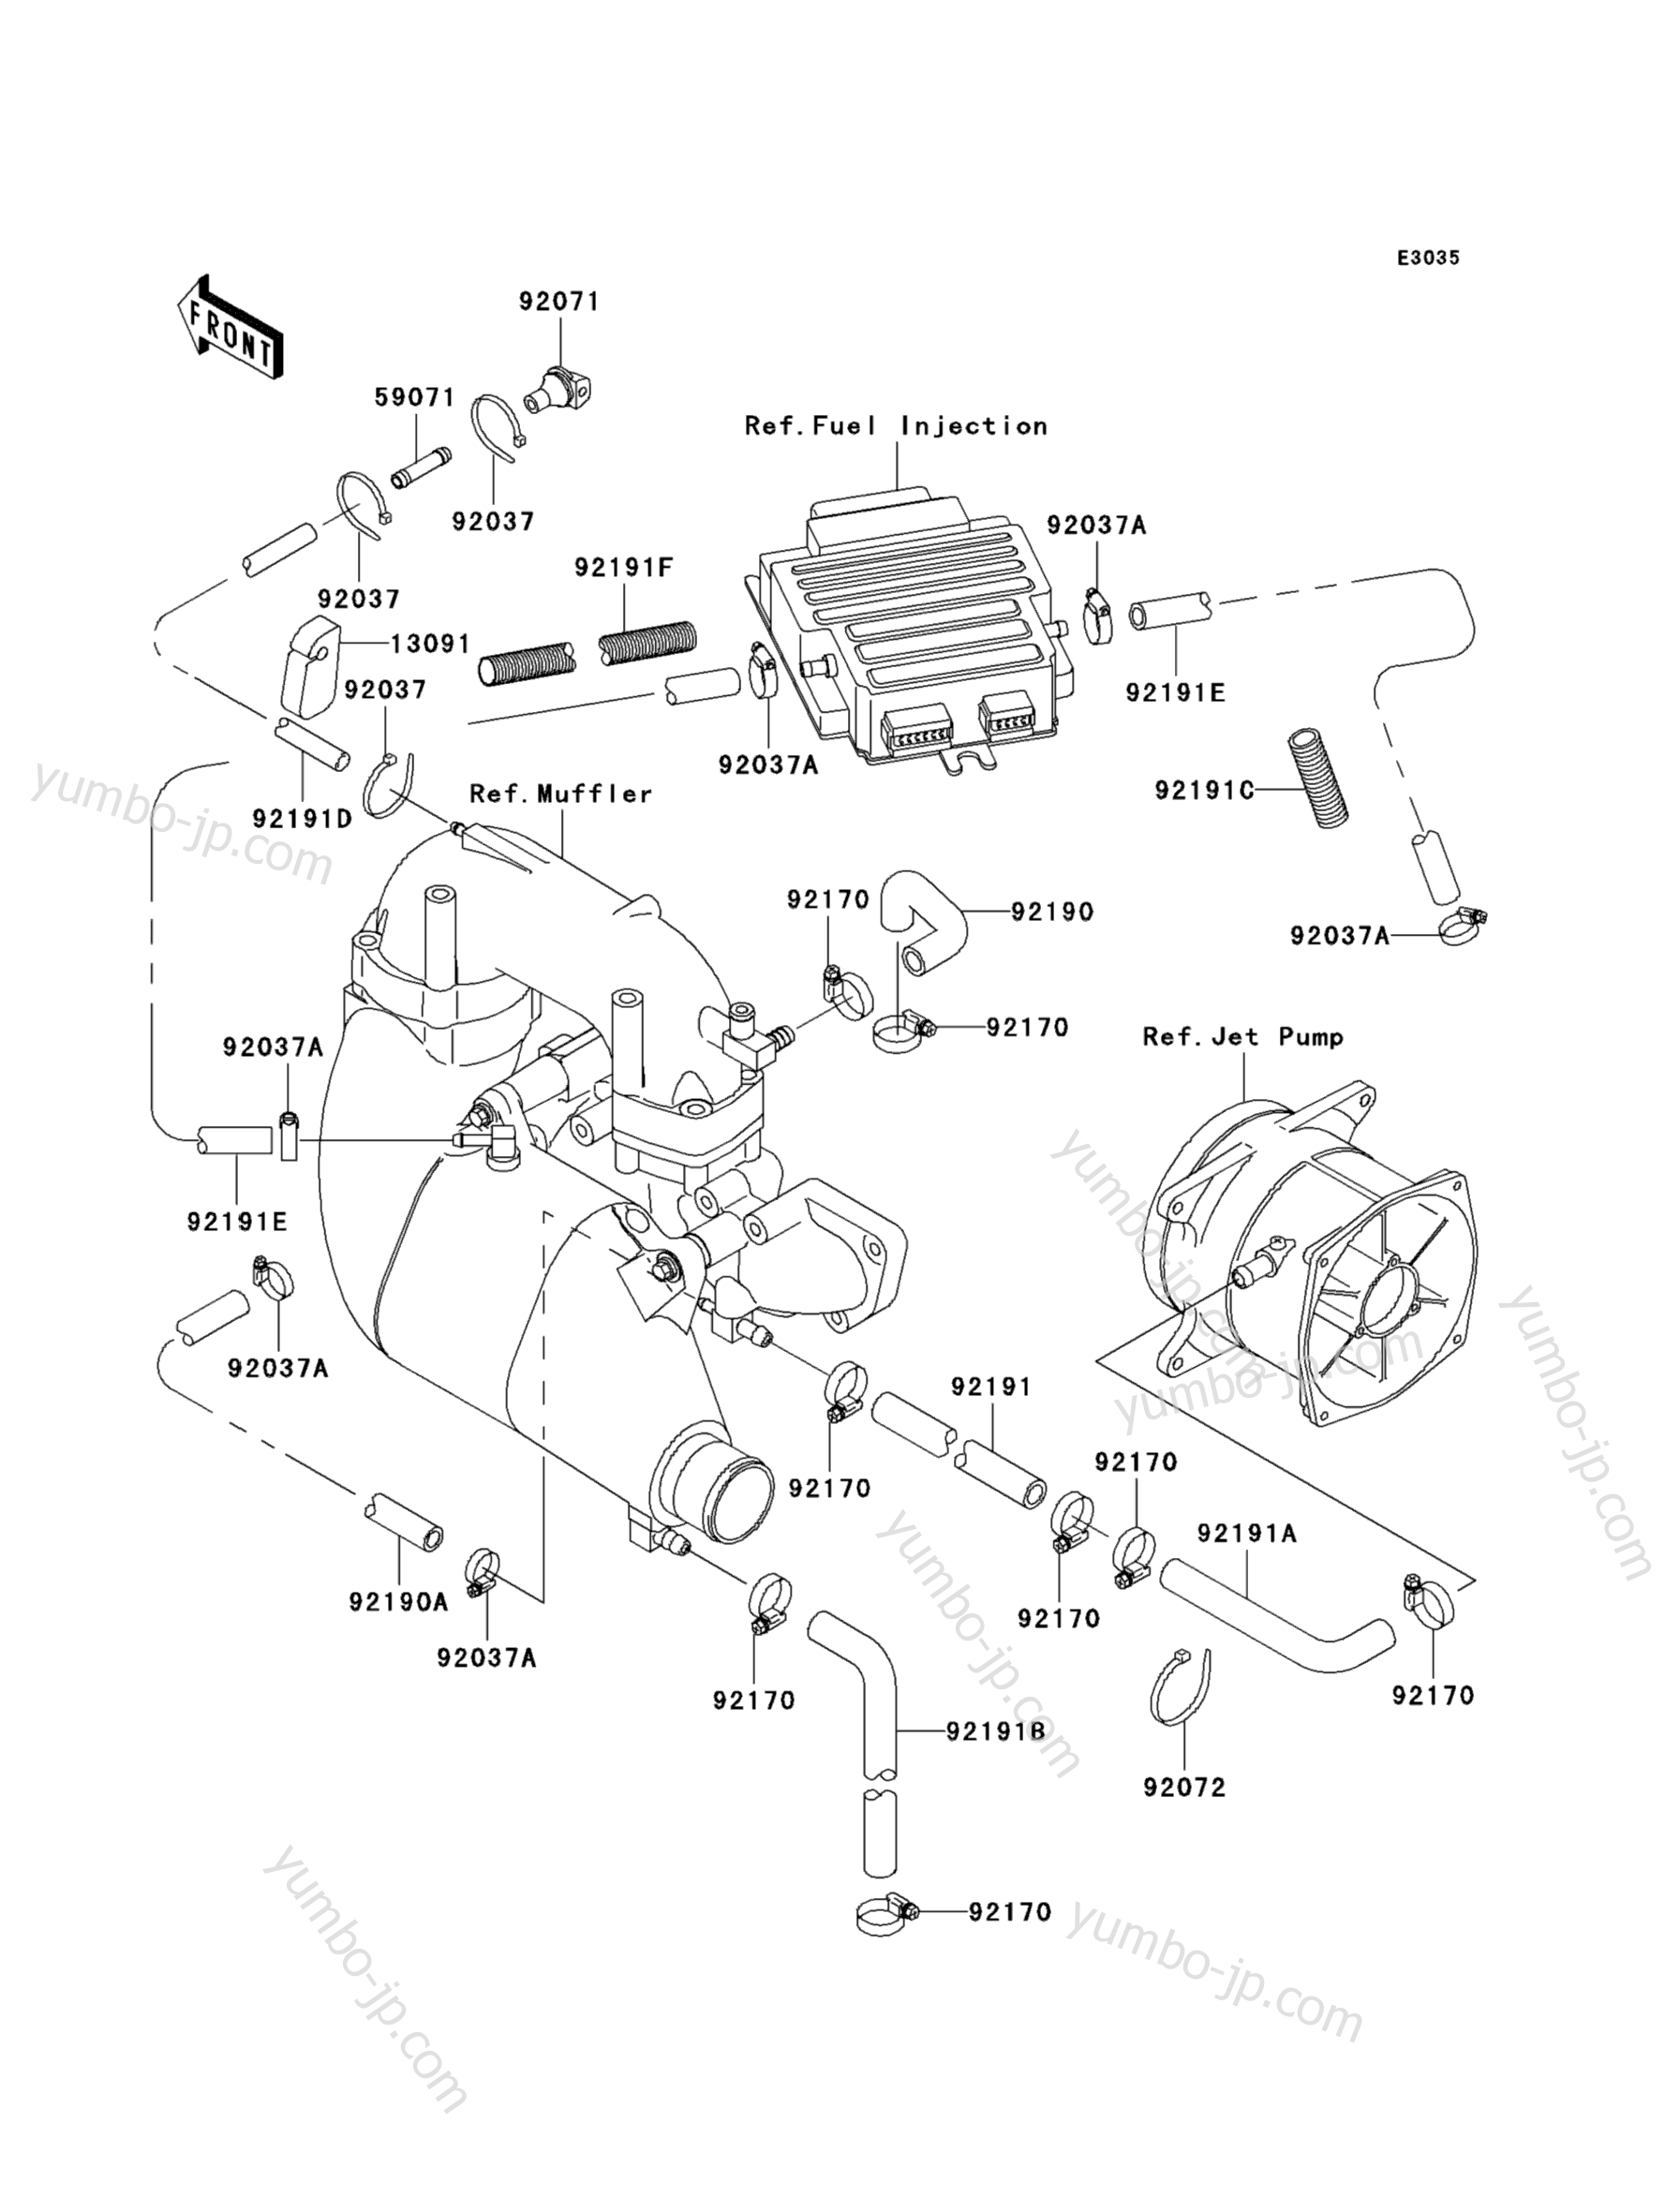 Cooling для гидроциклов KAWASAKI JET SKI 1100 STX D.I. (JT1100-F1) 2001 г.